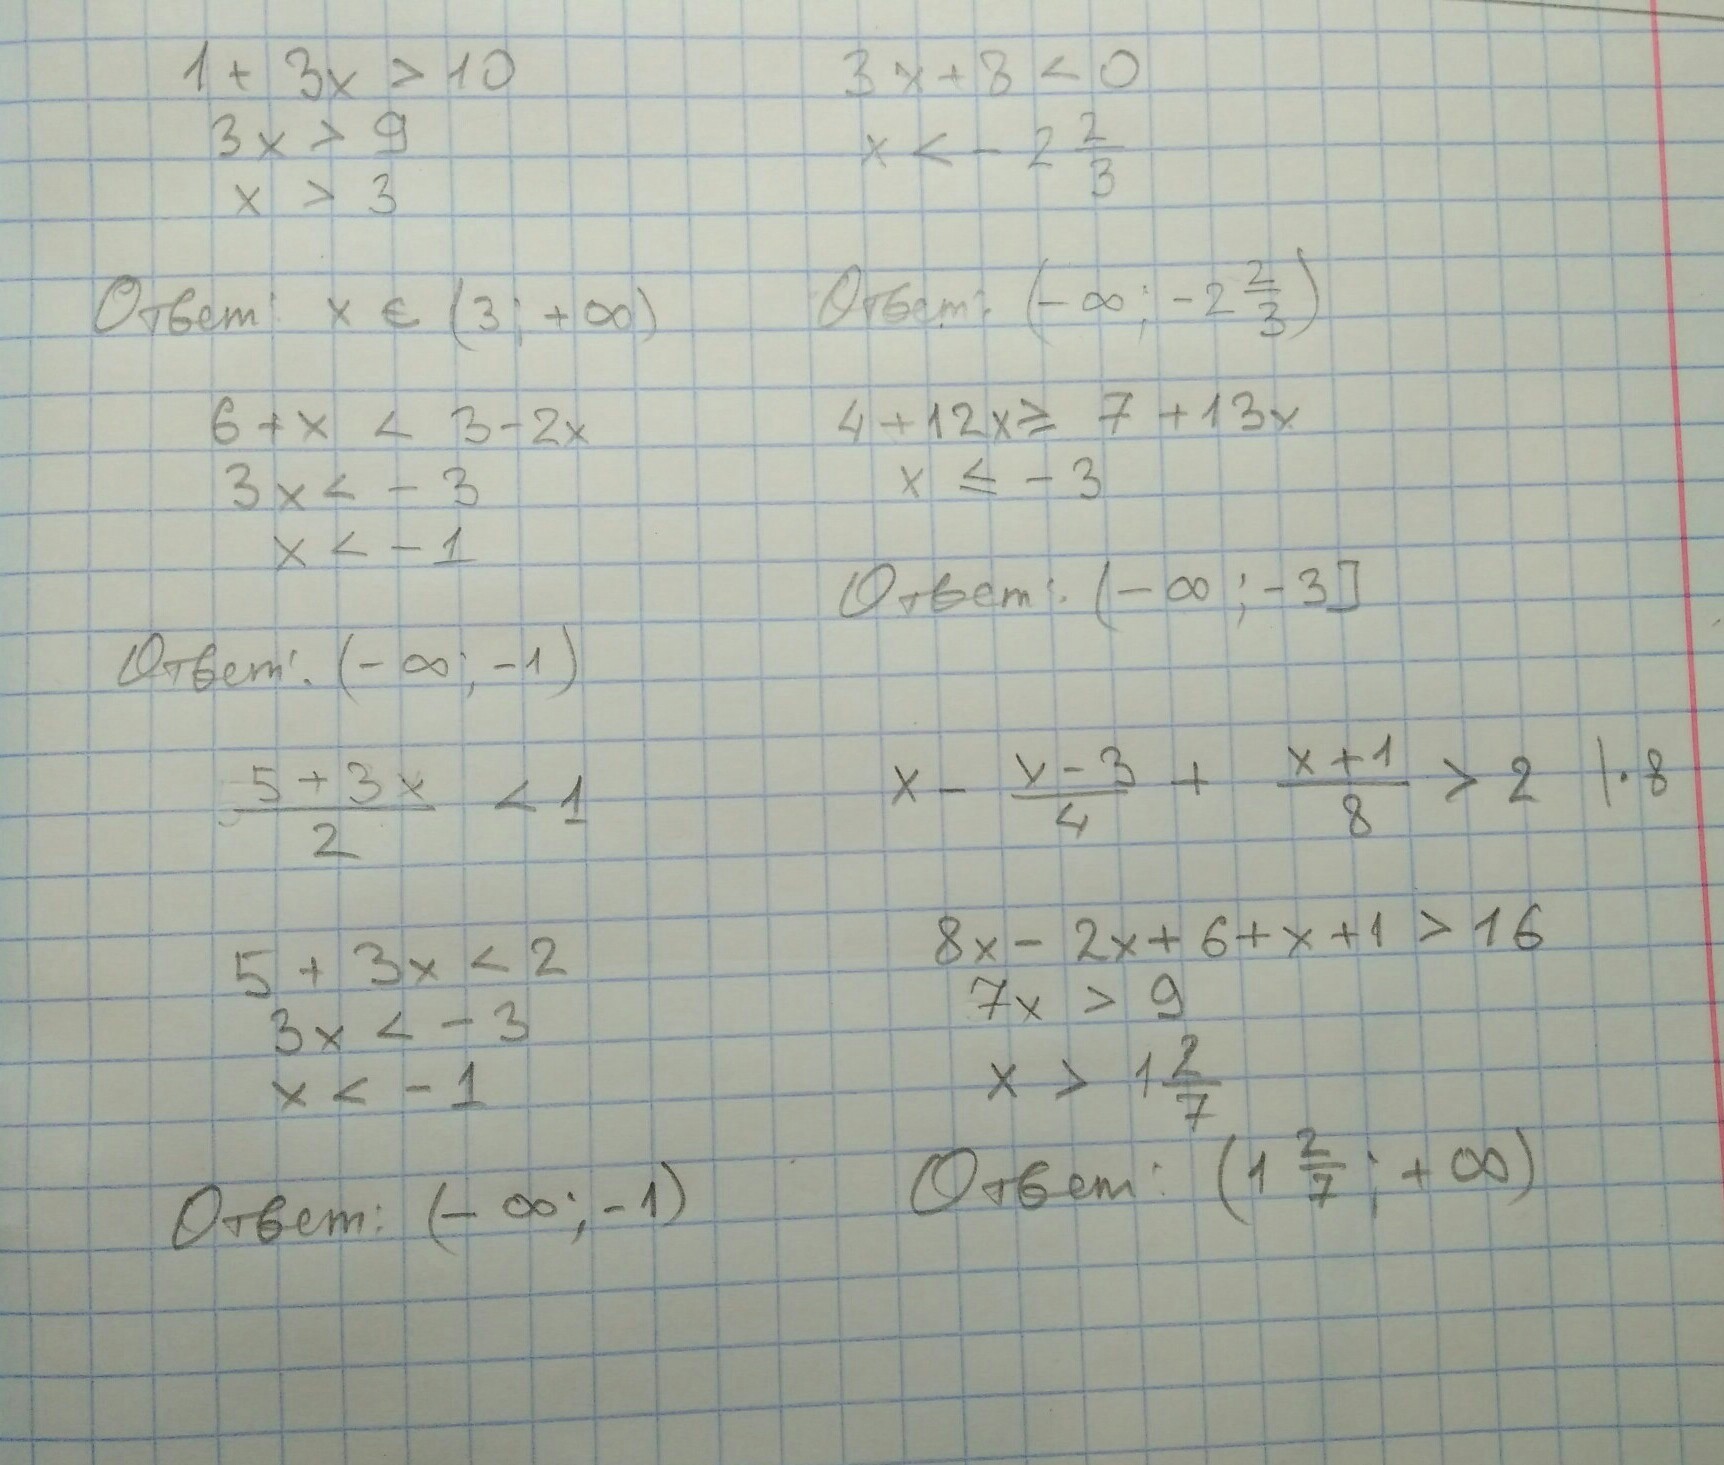 10x 7x 3 0. Решите неравенство .-4/(2х+8). 1/(X-2)(X-3) больше 0. 3x+2/x-4 меньше 0. Решение неравенства x2-3x-4 меньше или равно нулю.